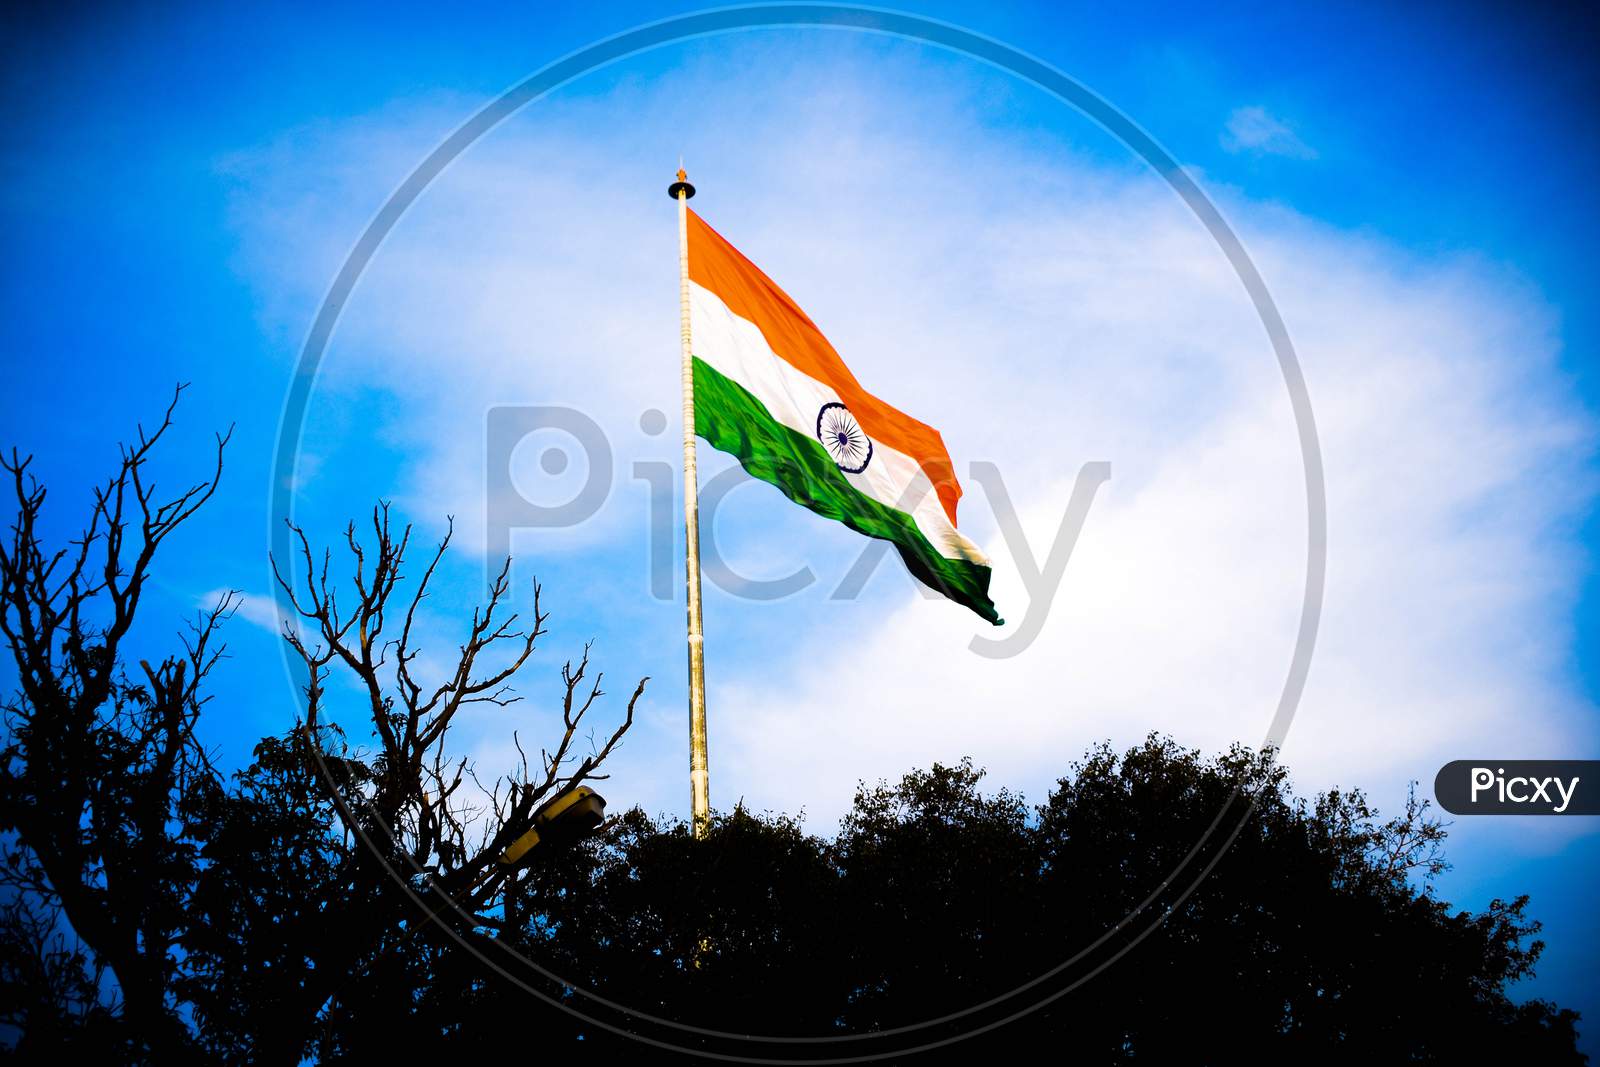 indian national flag at wagah/attari border amritsar